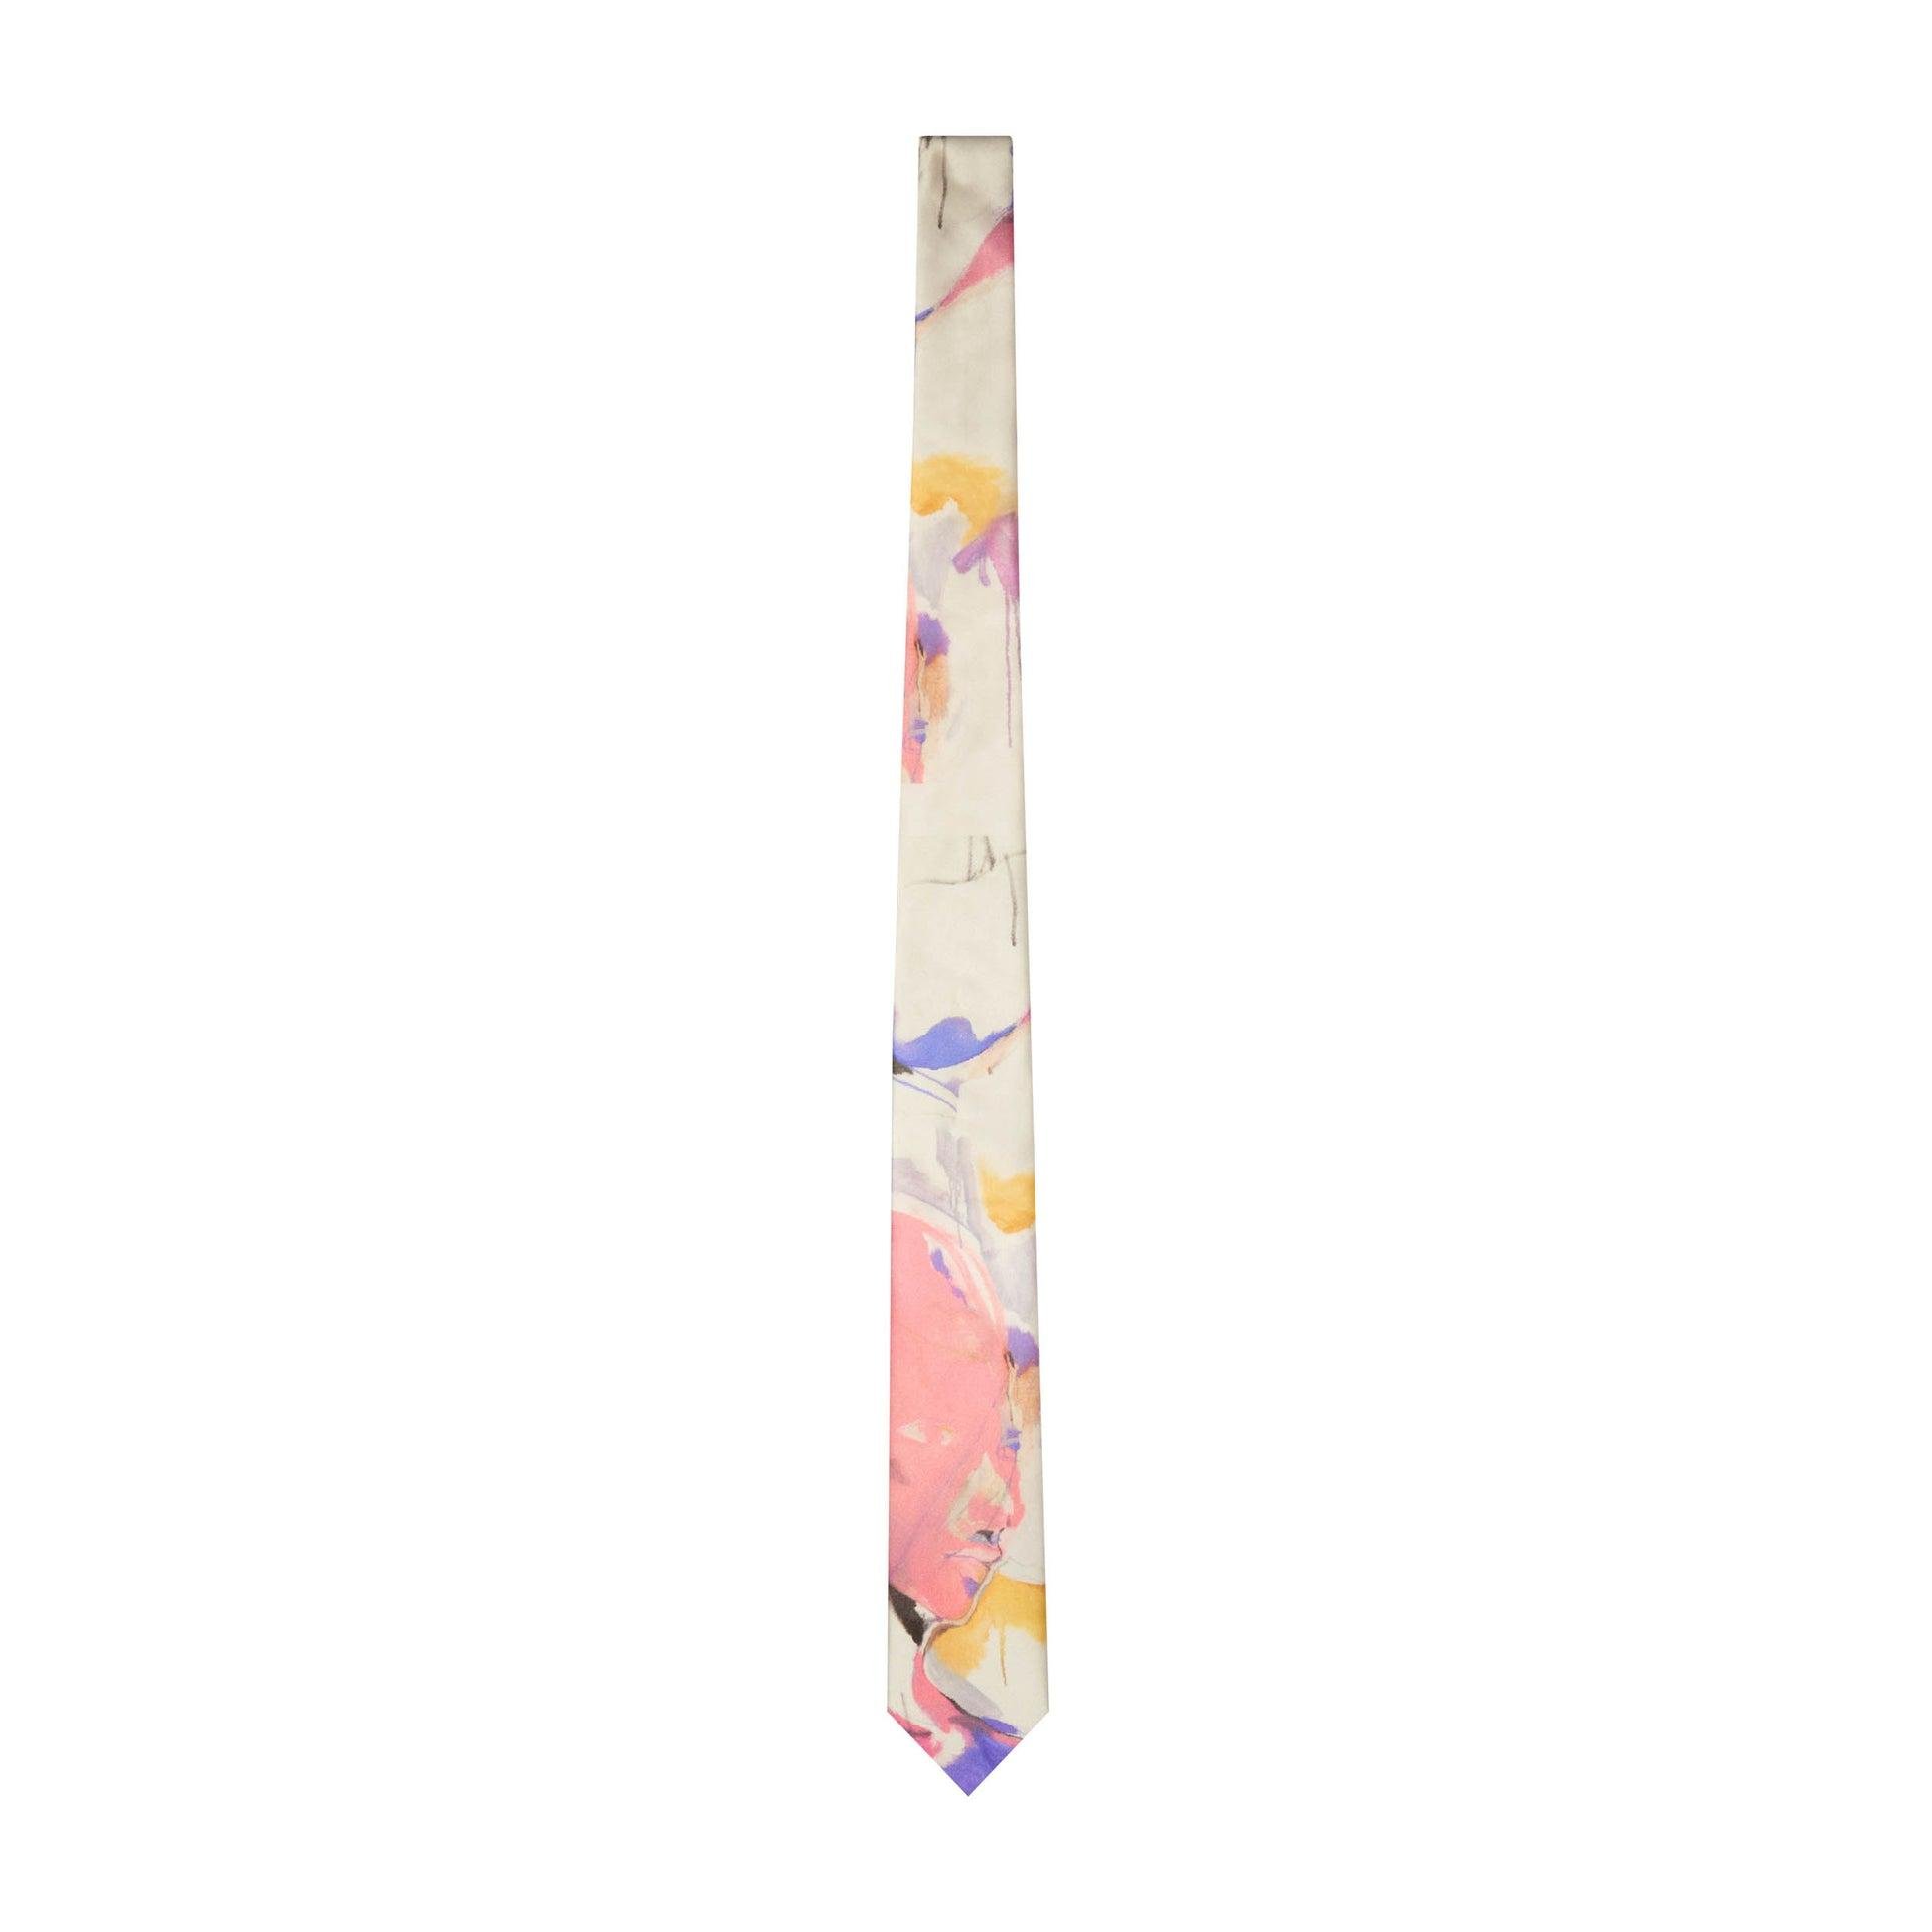 Painted Printed Silk Tie [Multi] by KIDSUPER STUDIOS